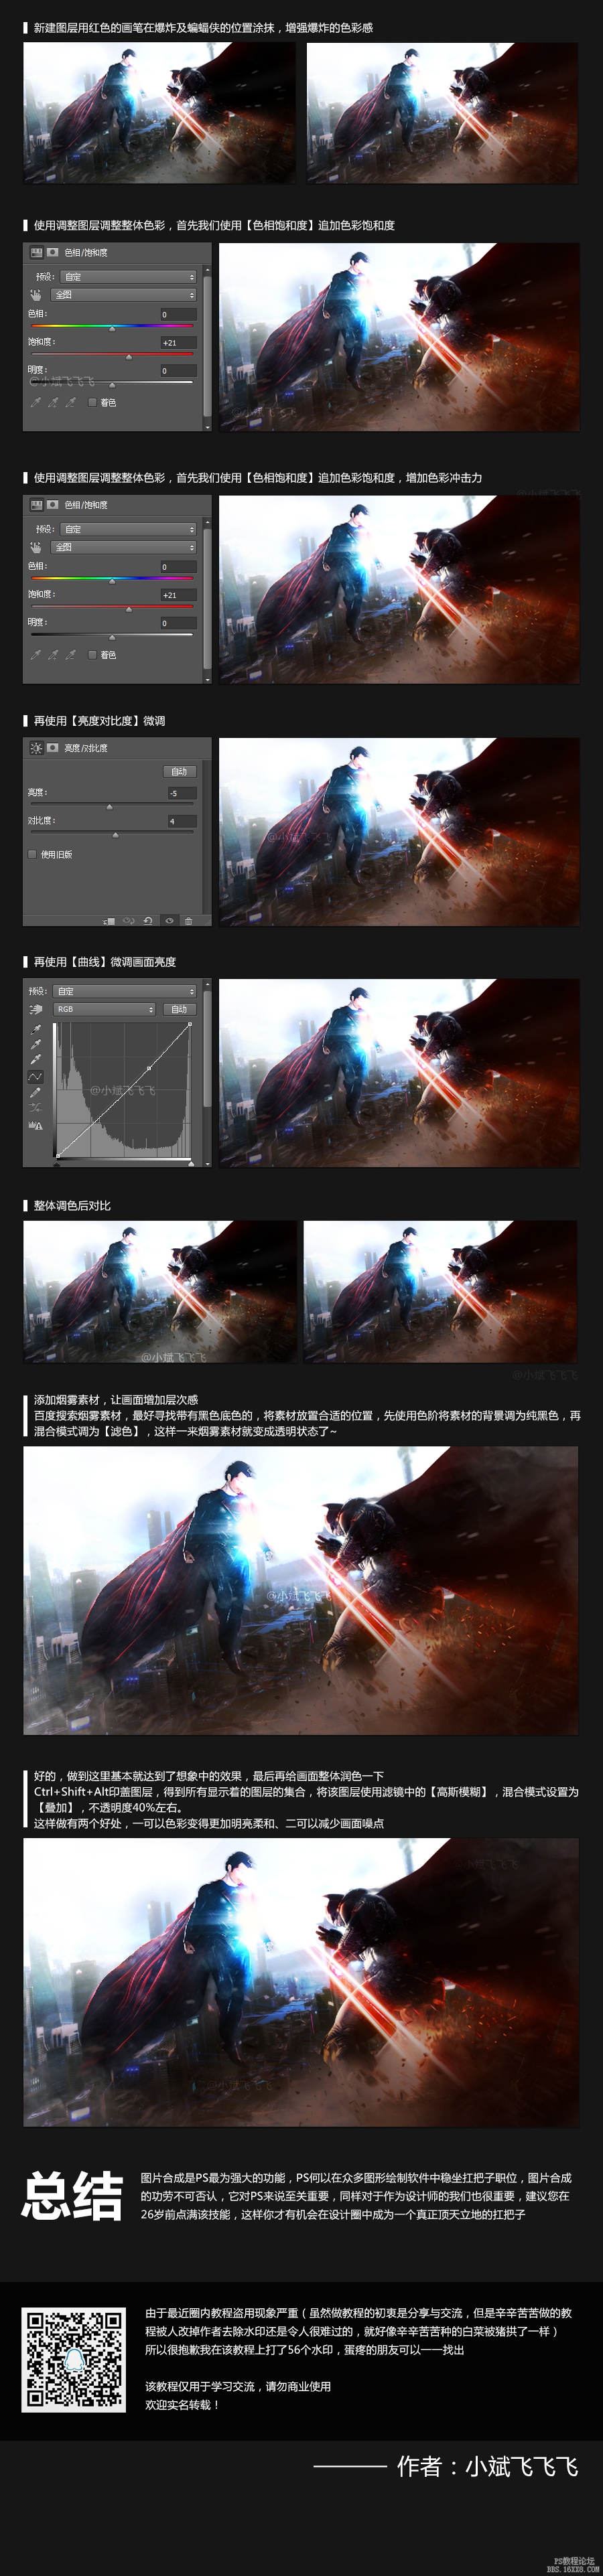 PS合成超人大战蝙蝠侠场景—超详细教程(3)插图